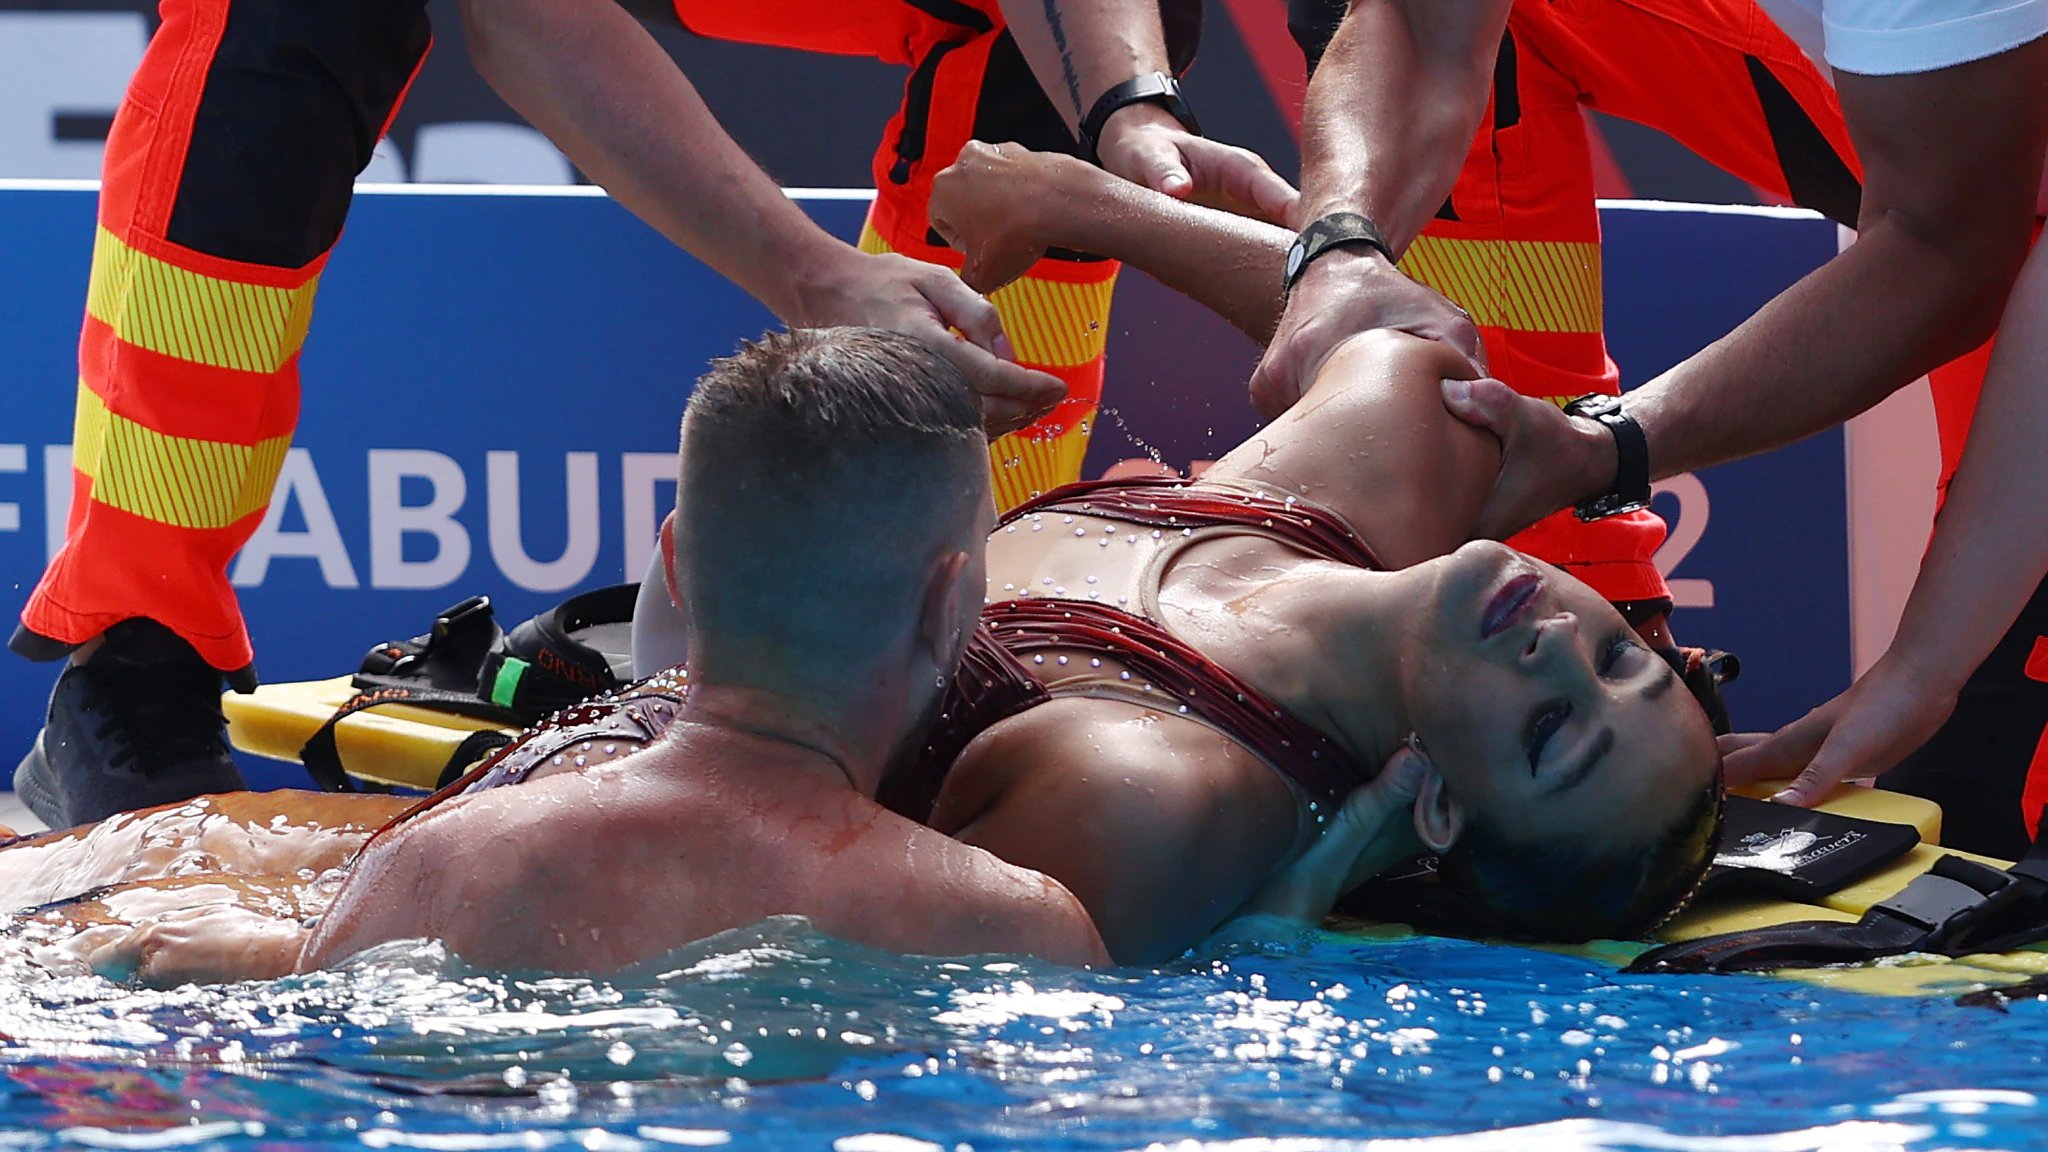 La statunitense Anita Alvarez sviene durante la finale mondiale di nuoto sincronizzato